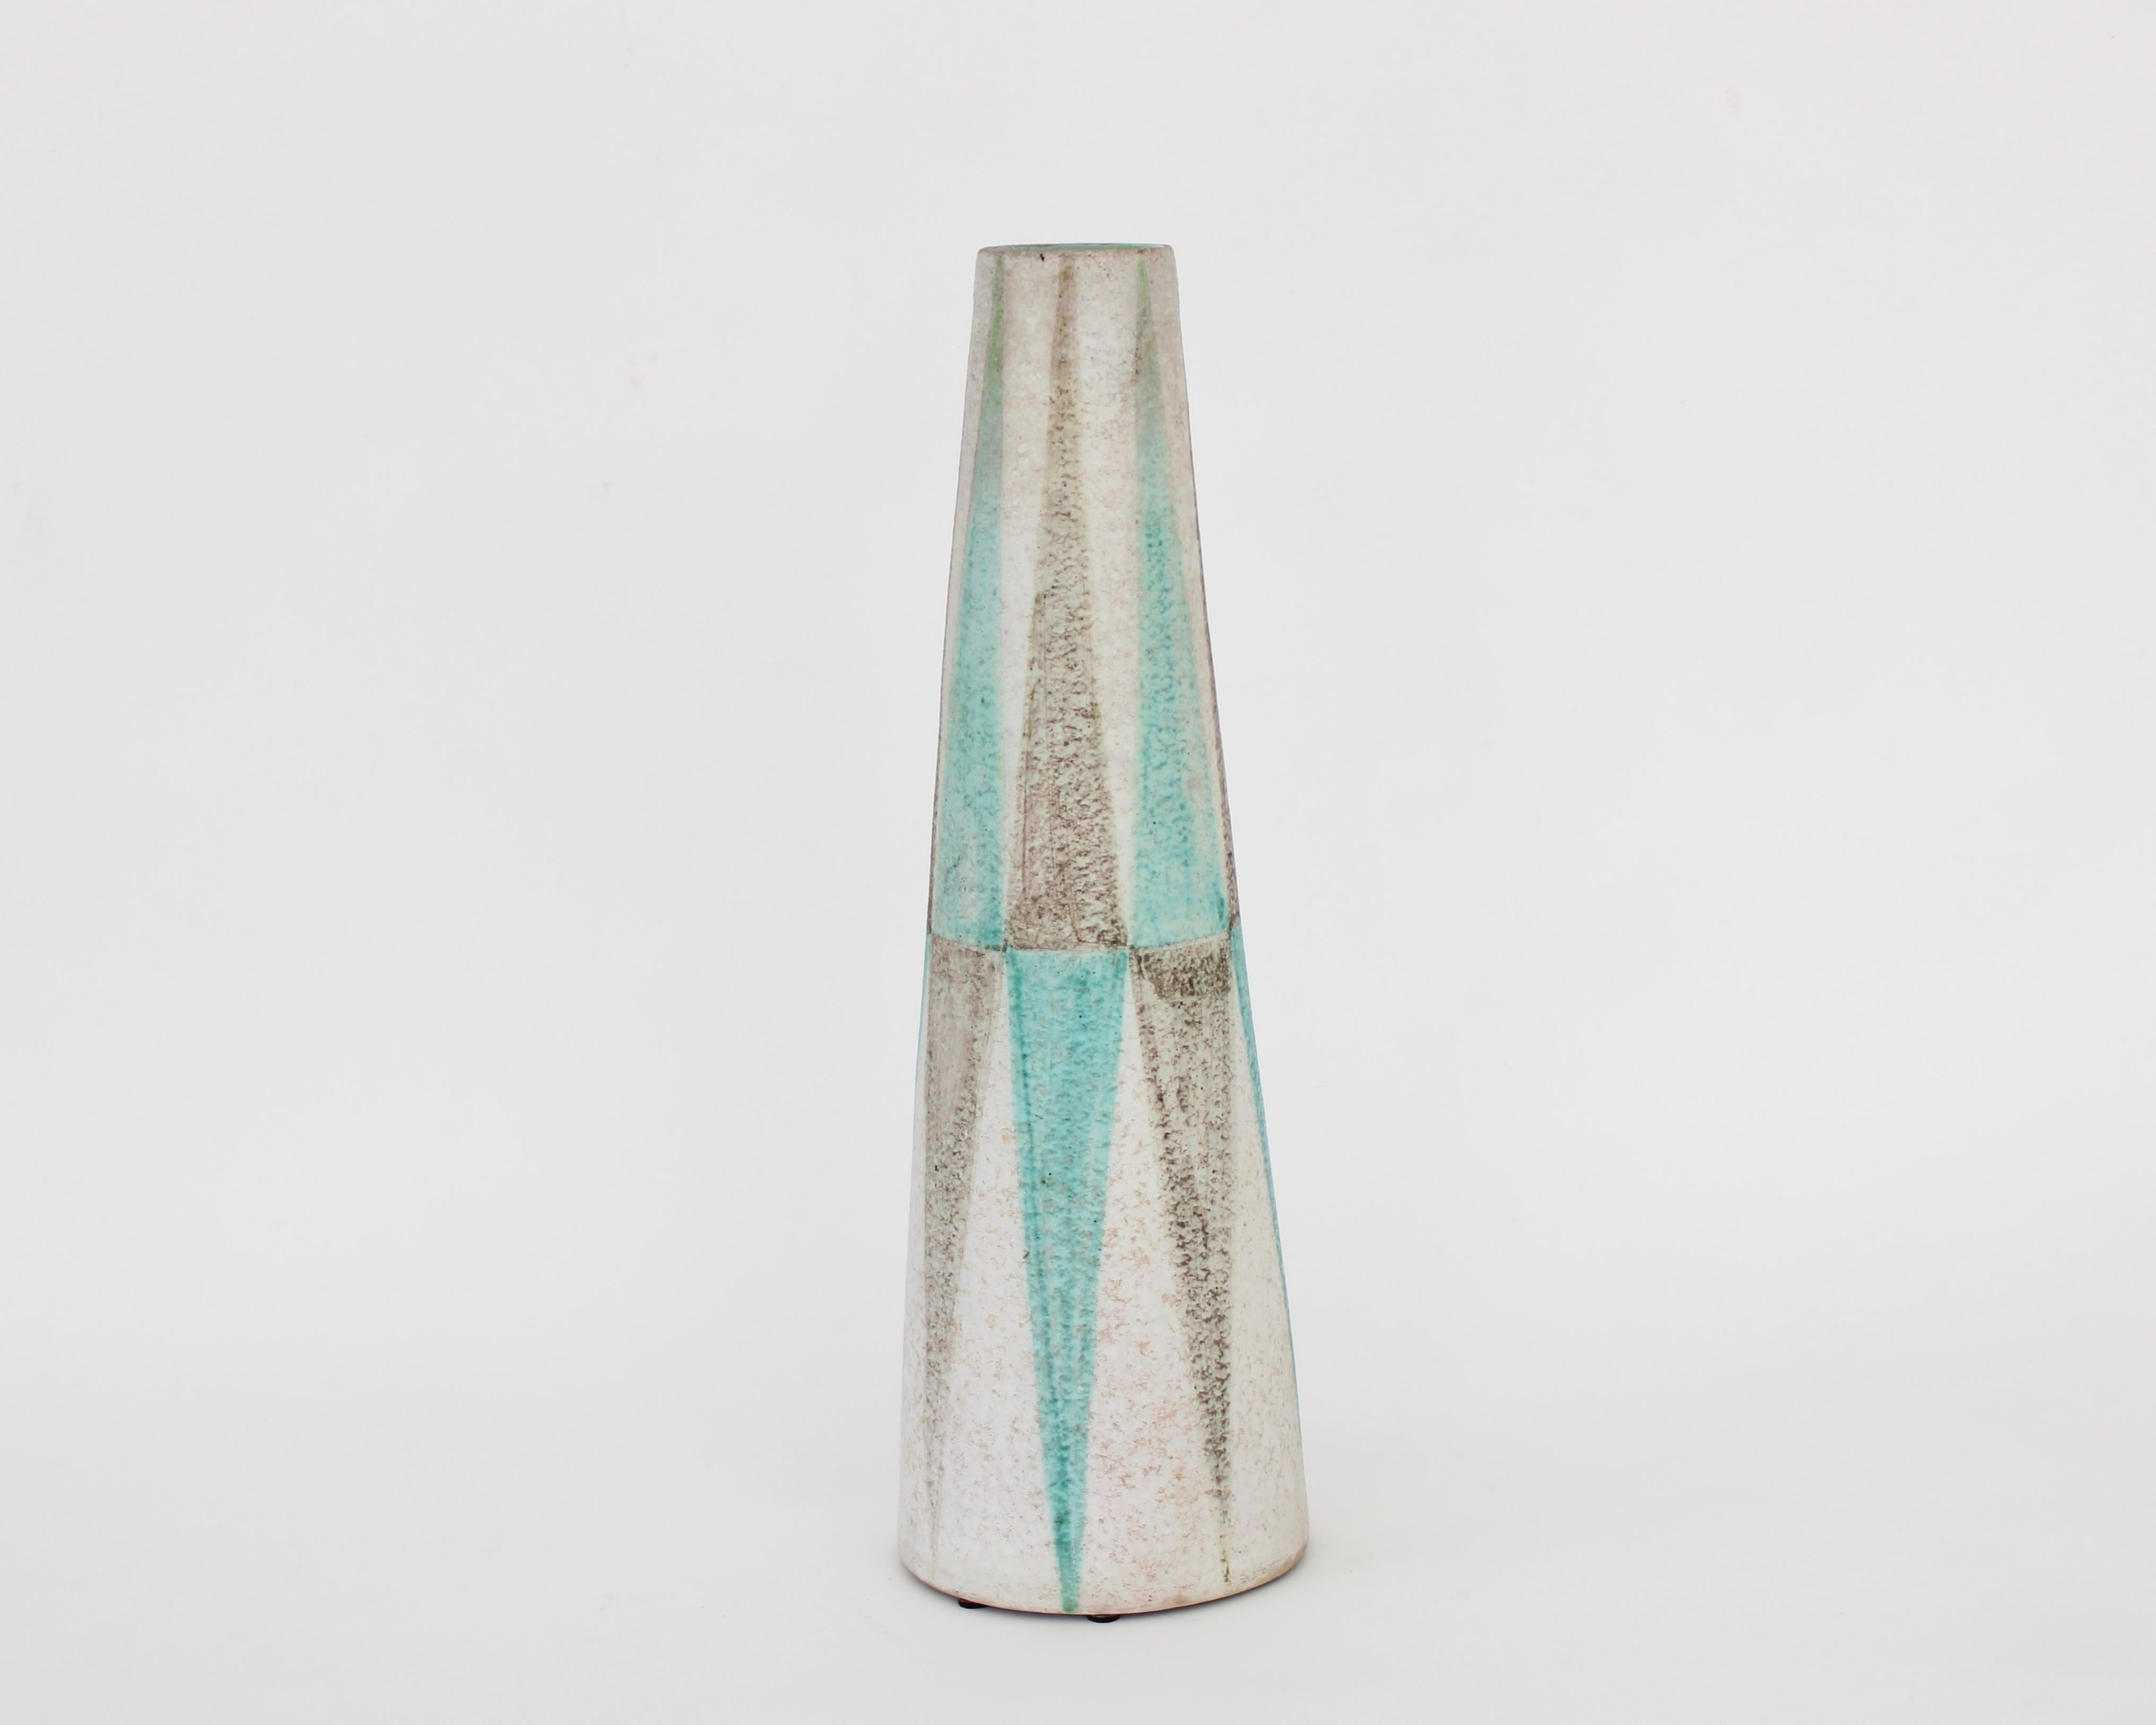 Vase italien en céramique pour Raymor, très probablement par Fantoni compte tenu de la quantité de travail de conception qu'il a fait pour Raymor et d'une faible trace de sa signature sur la base. 
Des émaux bleu d'eau pâle et gris brun peints dans